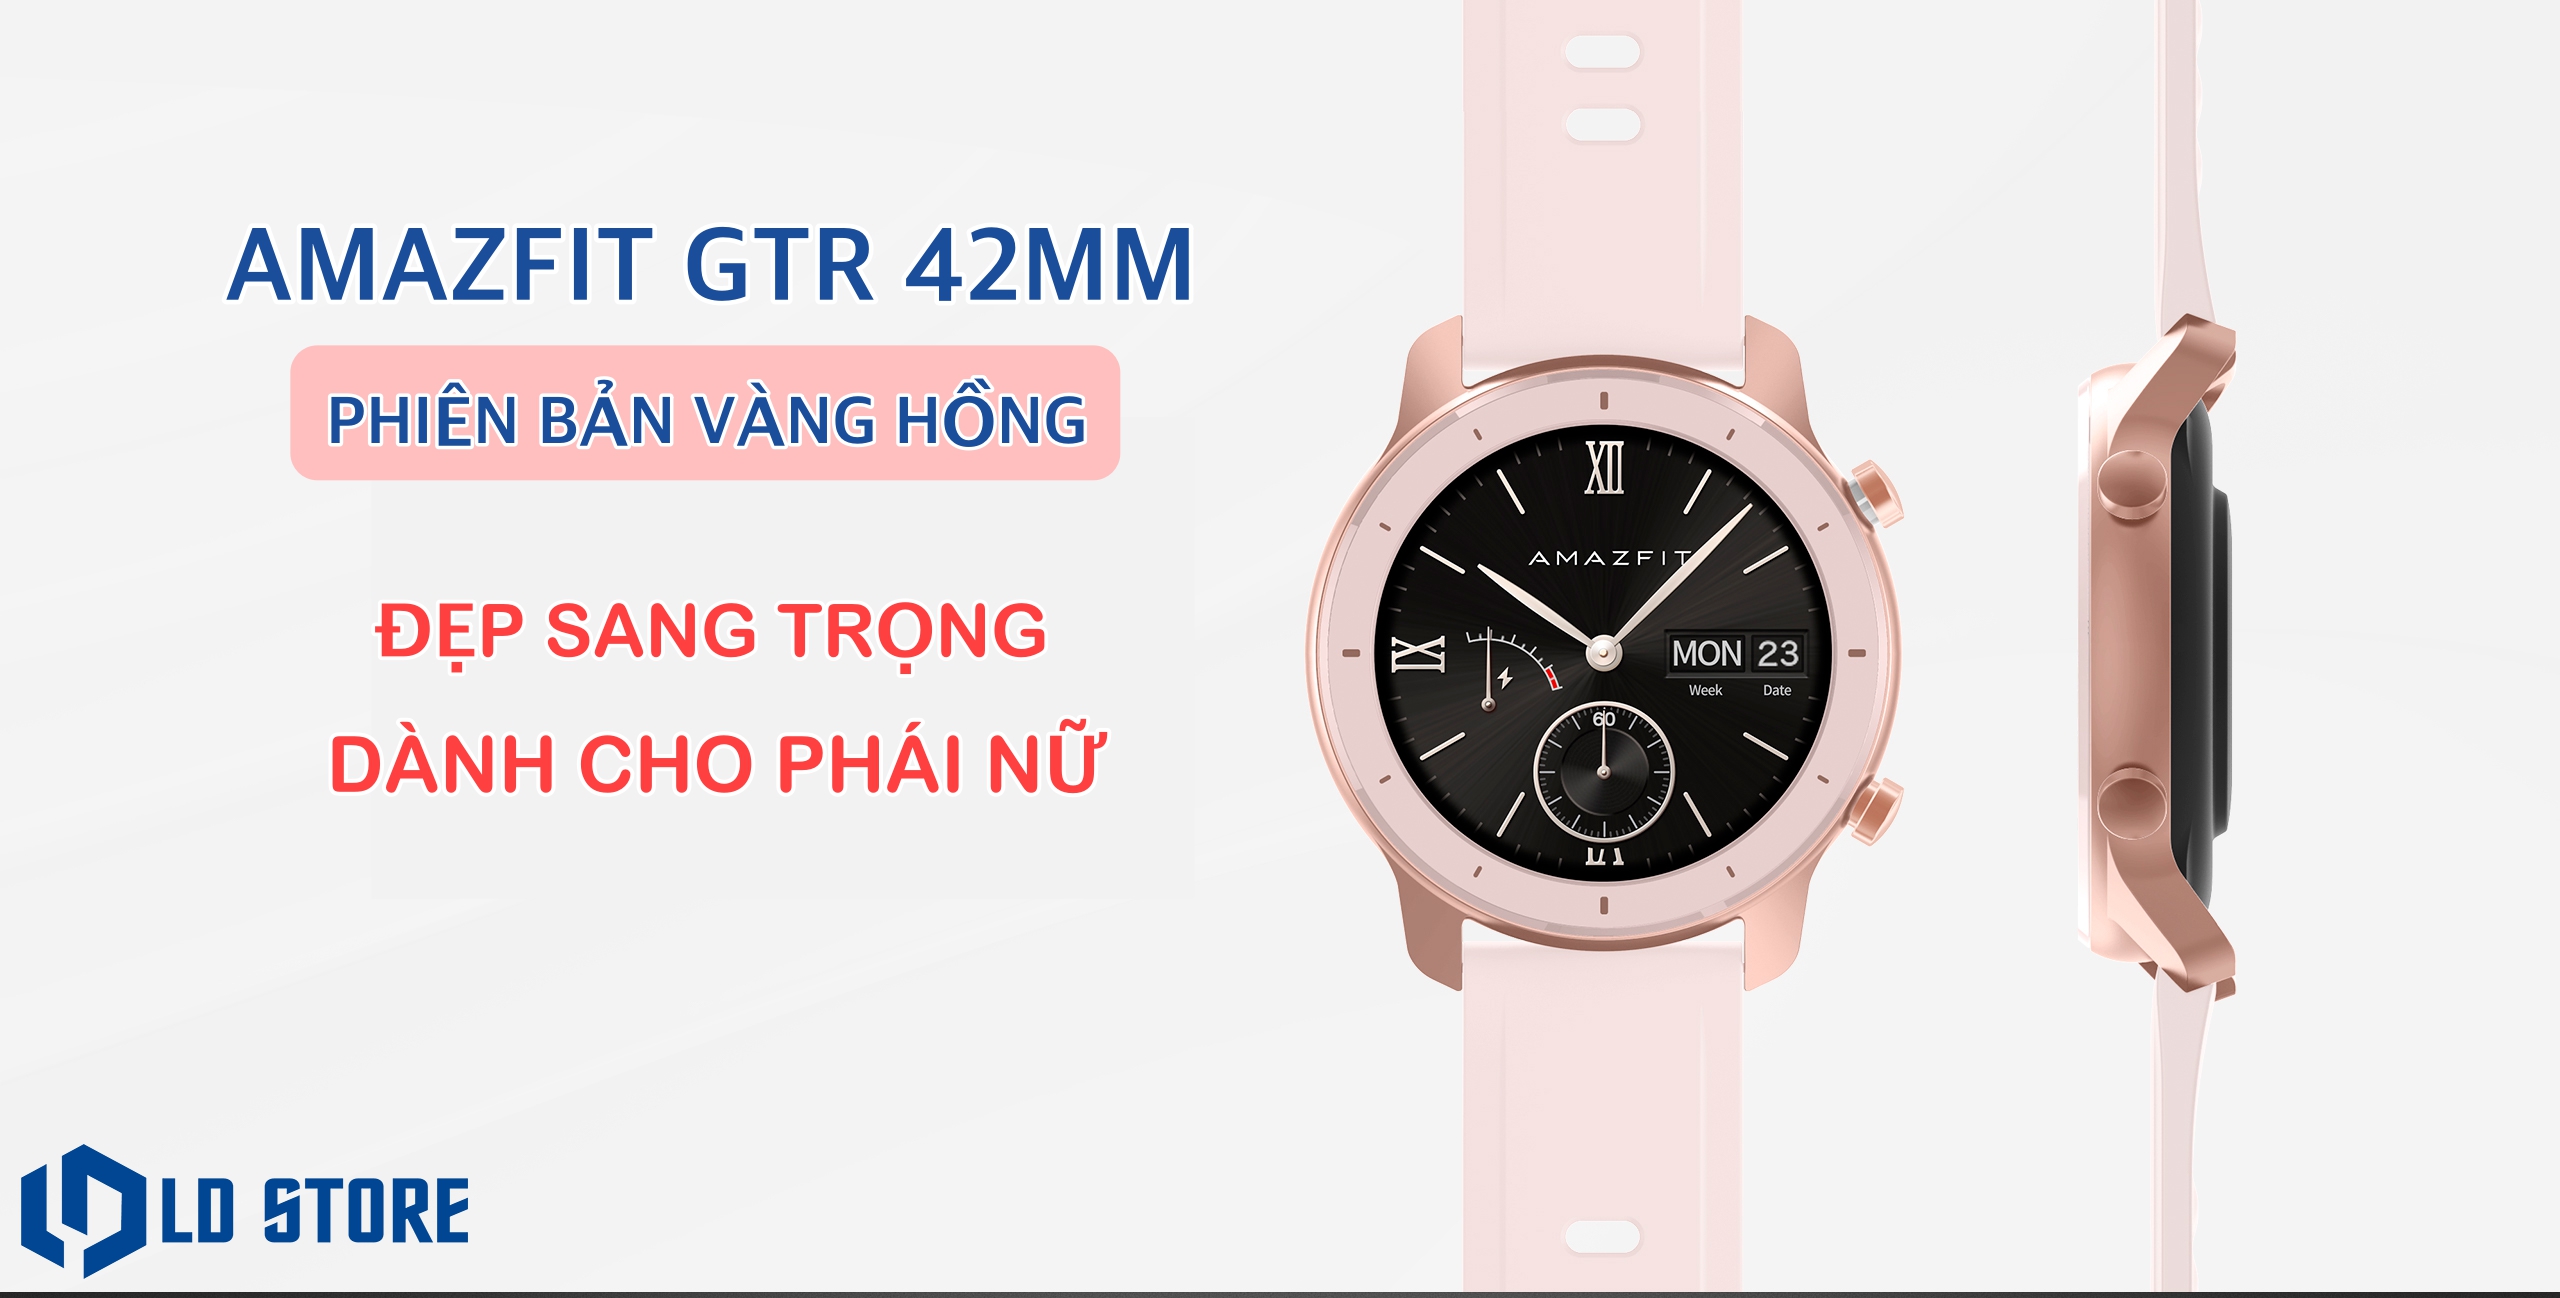 Đồng hồ thông minh Amazfit GTR phiên bản quốc tế 42mm Rose Gold - Đồng hồ thông minh Amazfit GTR
Năm 2024, bạn không cần phải cắm mặt vào điện thoại để xem tin nhắn hay cuộc gọi. Với đồng hồ thông minh Amazfit GTR phiên bản quốc tế 42mm Rose Gold, bạn có thể quản lý cuộc sống của mình chỉ bằng một cái nhấn nháy. Với thiết kế sang trọng cùng chất liệu đẹp mắt, Amazfit GTR sẽ là phụ kiện hoàn hảo dành cho bạn.